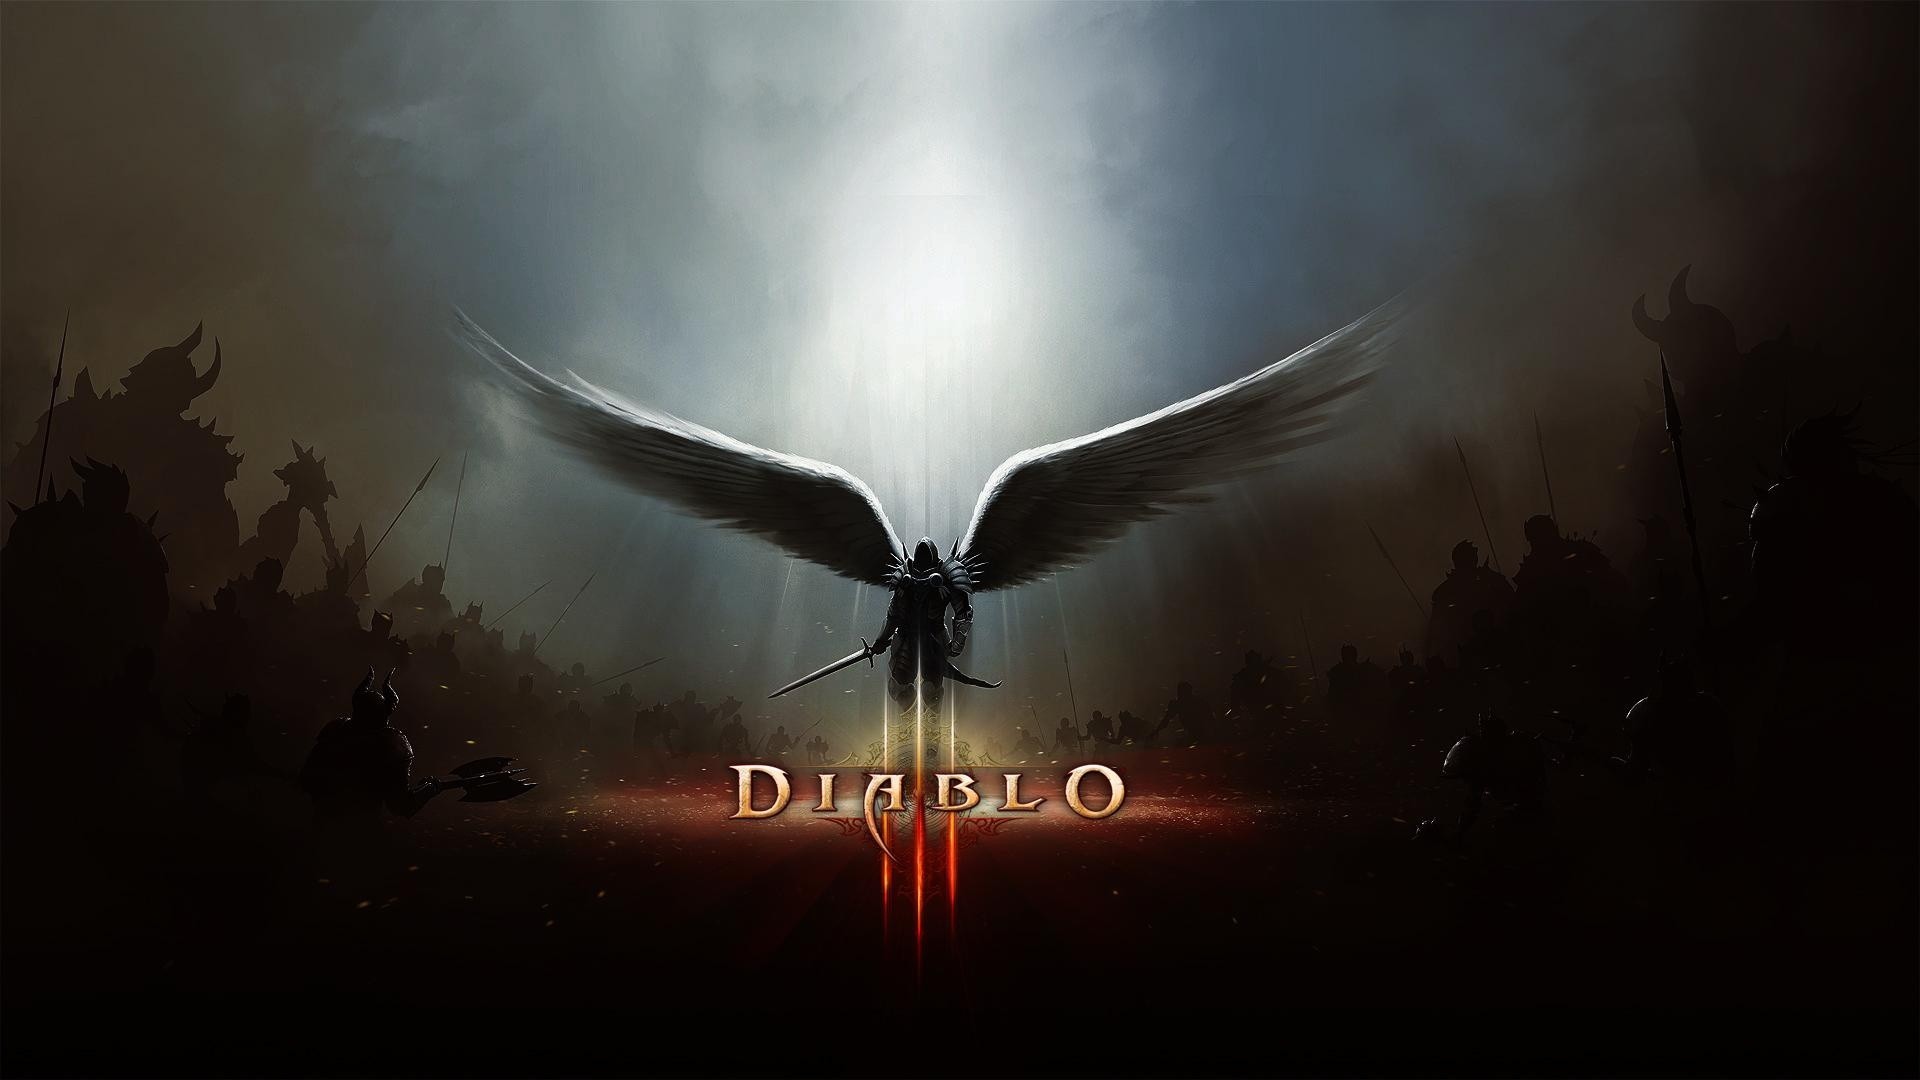 1920x1080 Diablo III HD Wallpaper | Hintergrund |  | ID:508574 - Wallpaper  Abyss